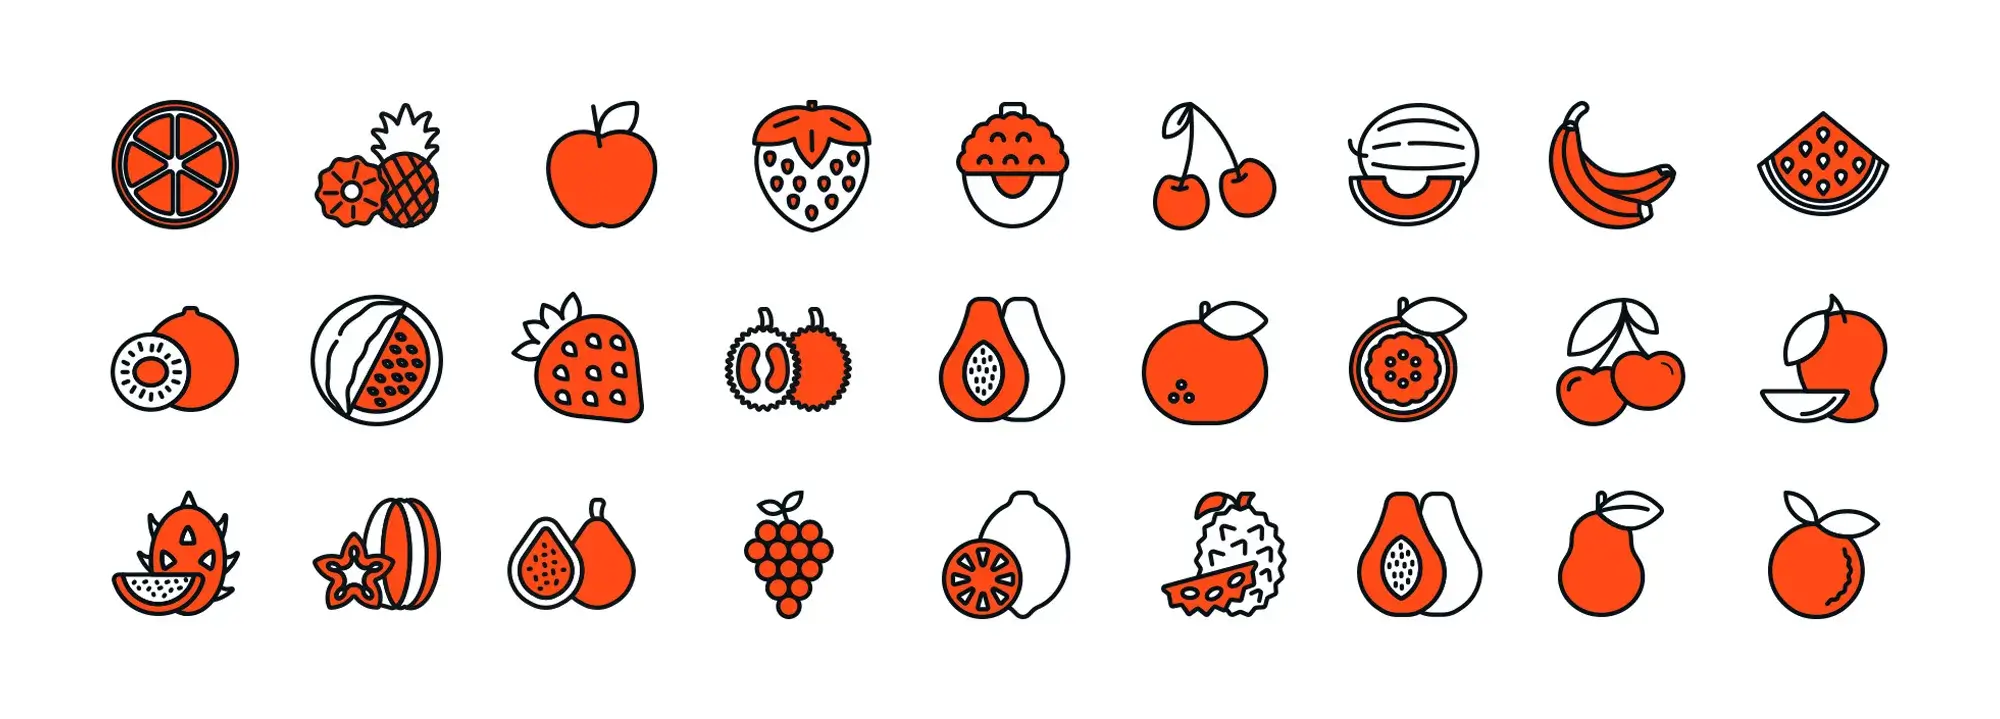 Fruit free WordPress icons